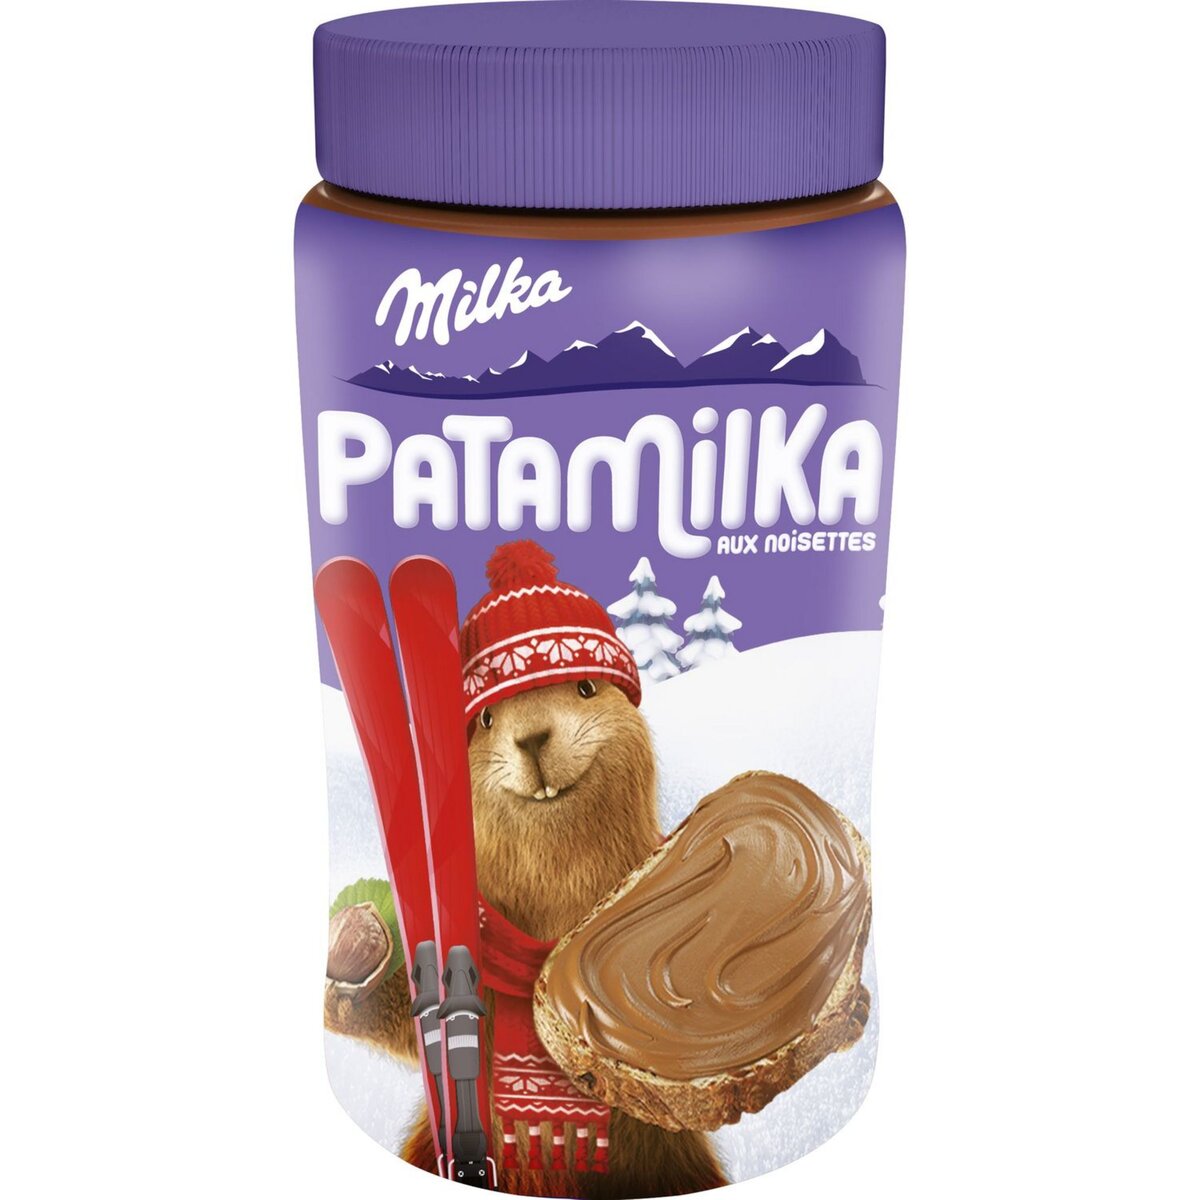 MILKA Patamilka pâte à tartiner aux noisettes 600g